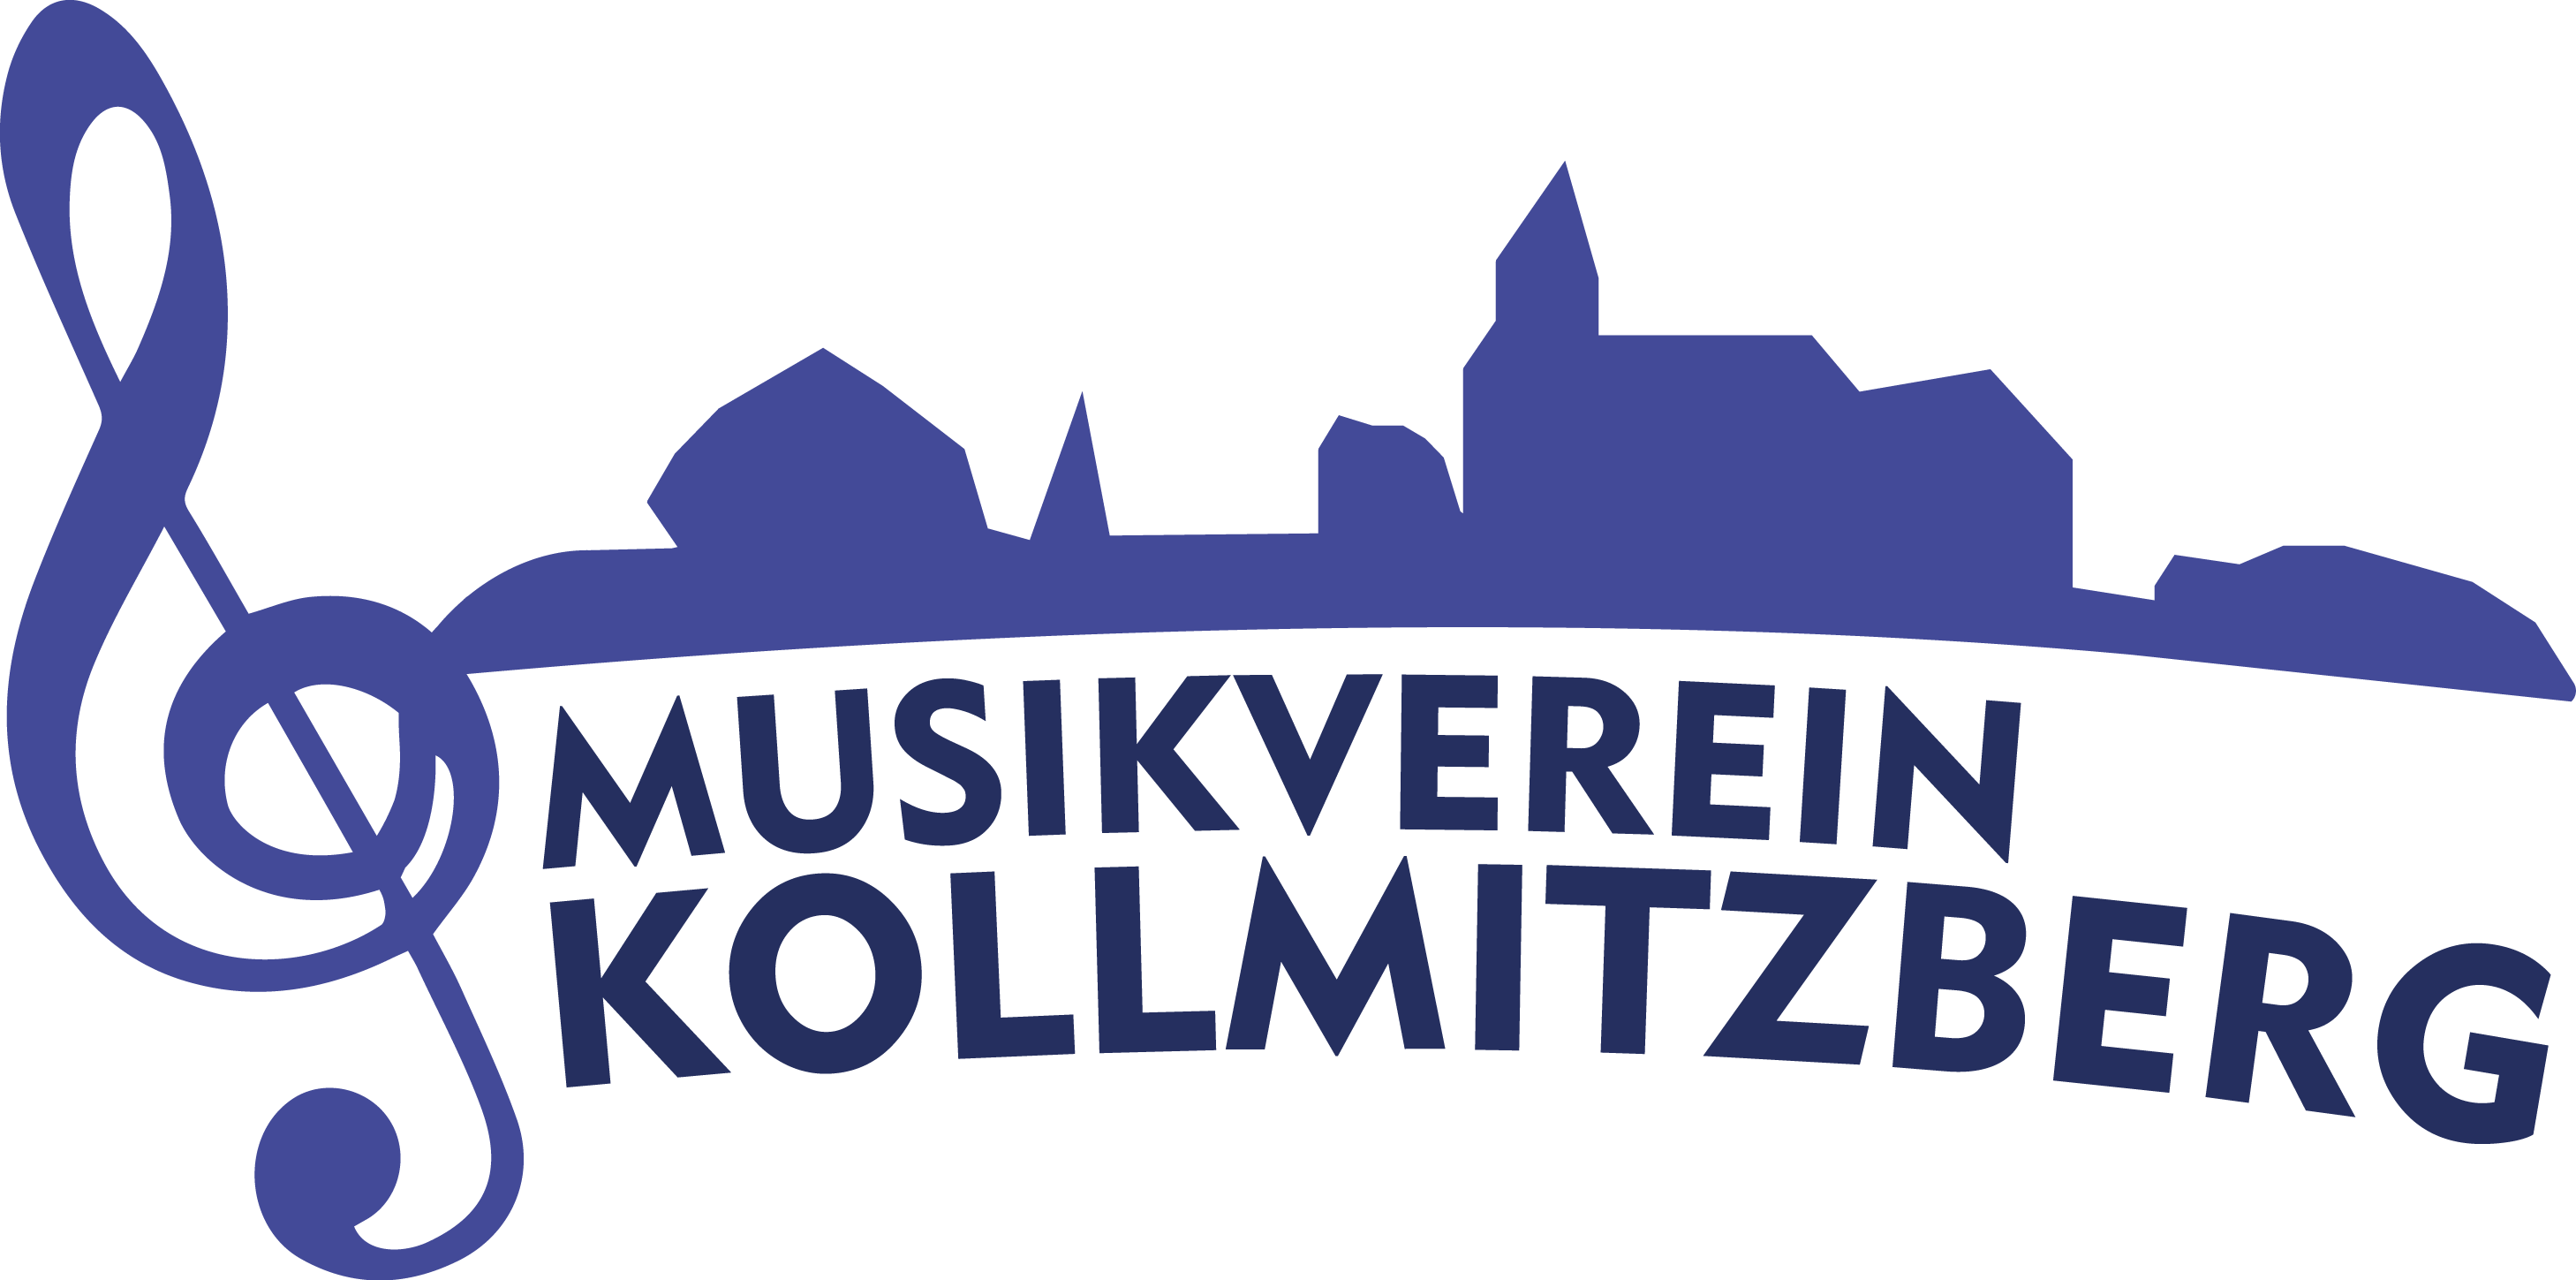 Musikverein Kollmitzberg